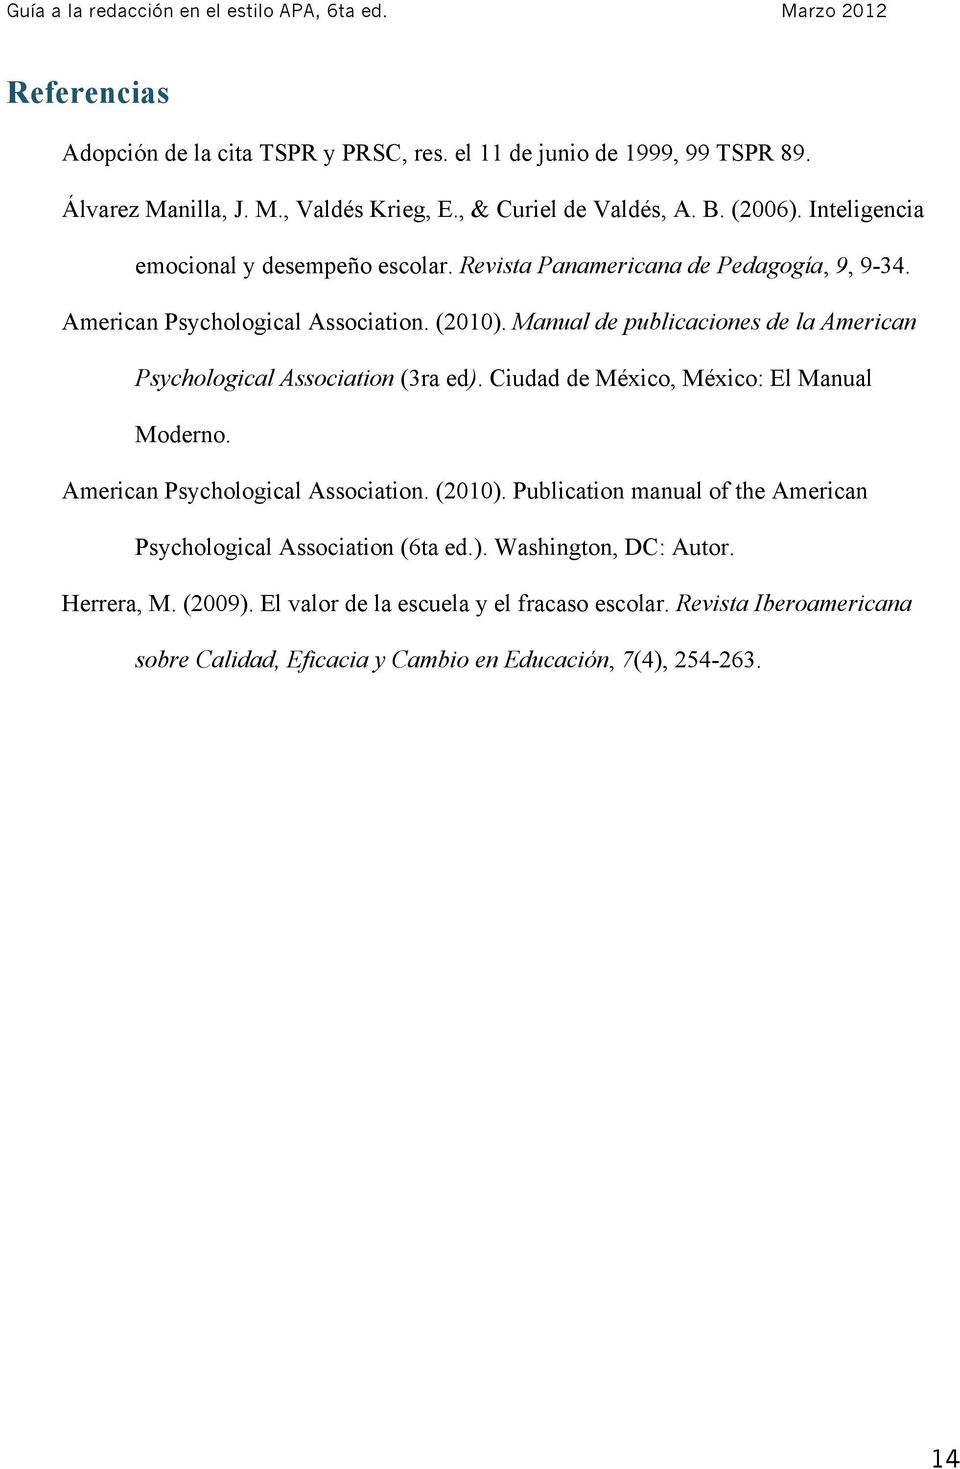 Manual de publicaciones de la American Psychological Association (3ra ed). Ciudad de México, México: El Manual Moderno. American Psychological Association. (2010).